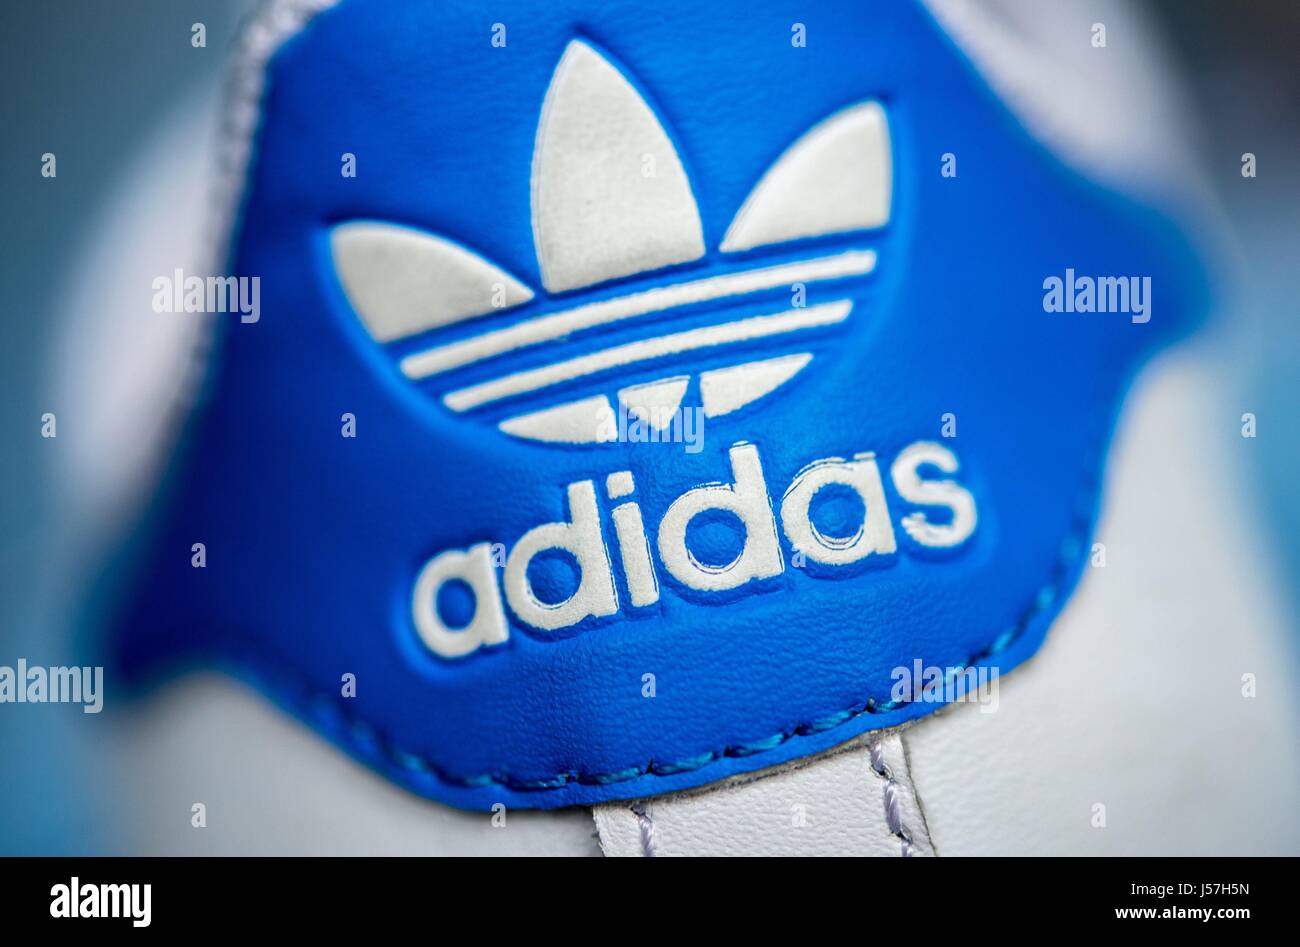 Nathaniel Ward Brillante Escoger El logotipo del fabricante de ropa deportiva Adidas en un zapato en  Hannover (Alemania), el 24 de abril de 2017. Uso | en todo el mundo  Fotografía de stock - Alamy